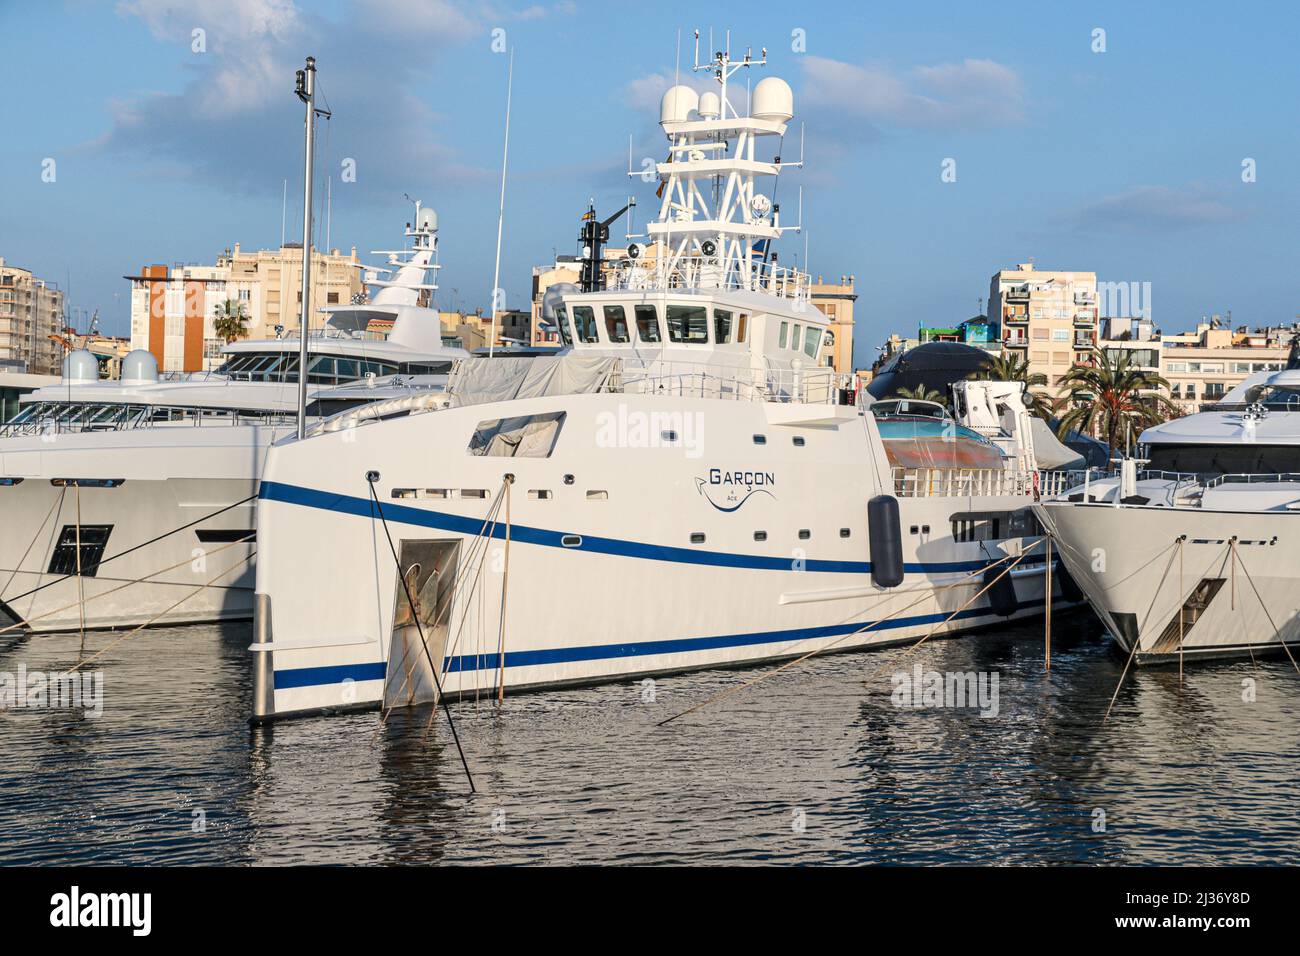 Lo yacht Garcon di proprietà del miliardario russo e oligarca romano Abramovich. Foto Stock